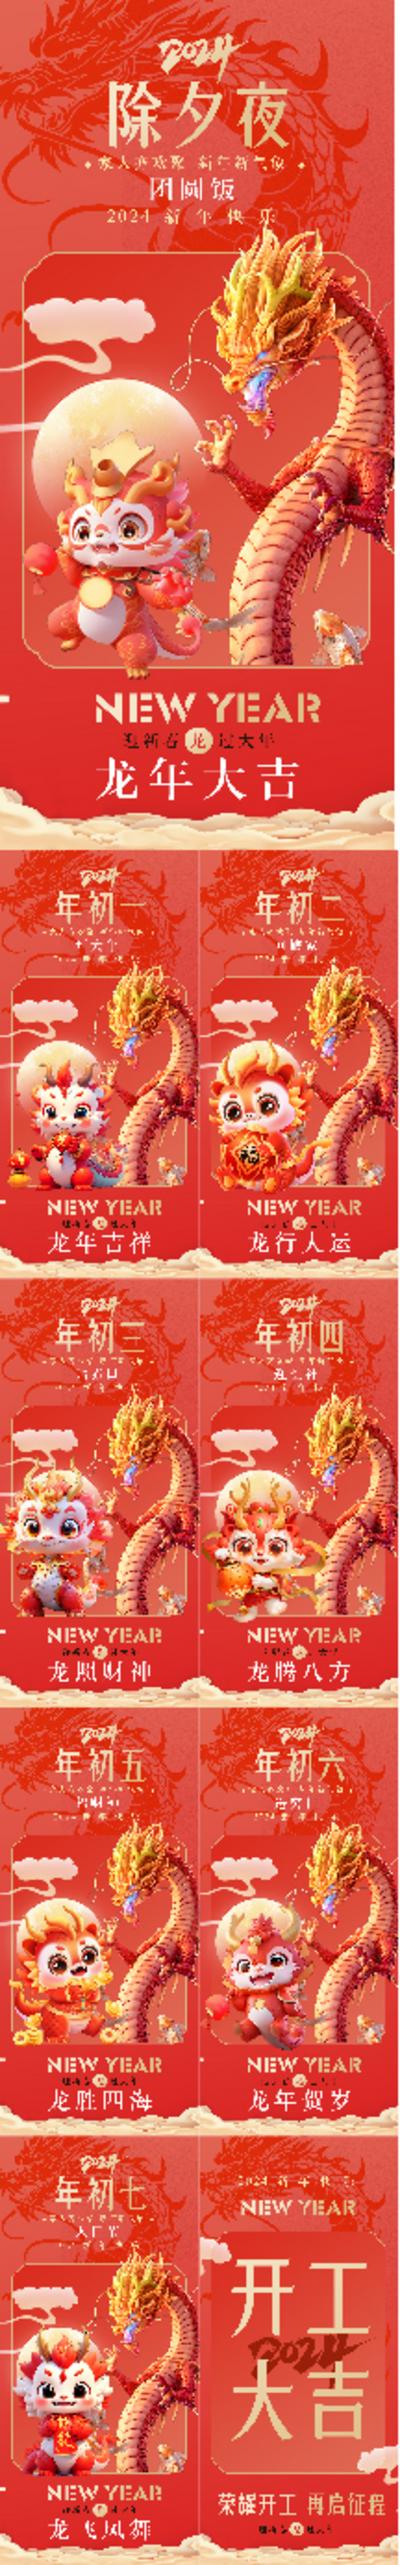 南门网 广告 海报 新年 初一 春节 大年初一 初七 年俗 年味 氛围